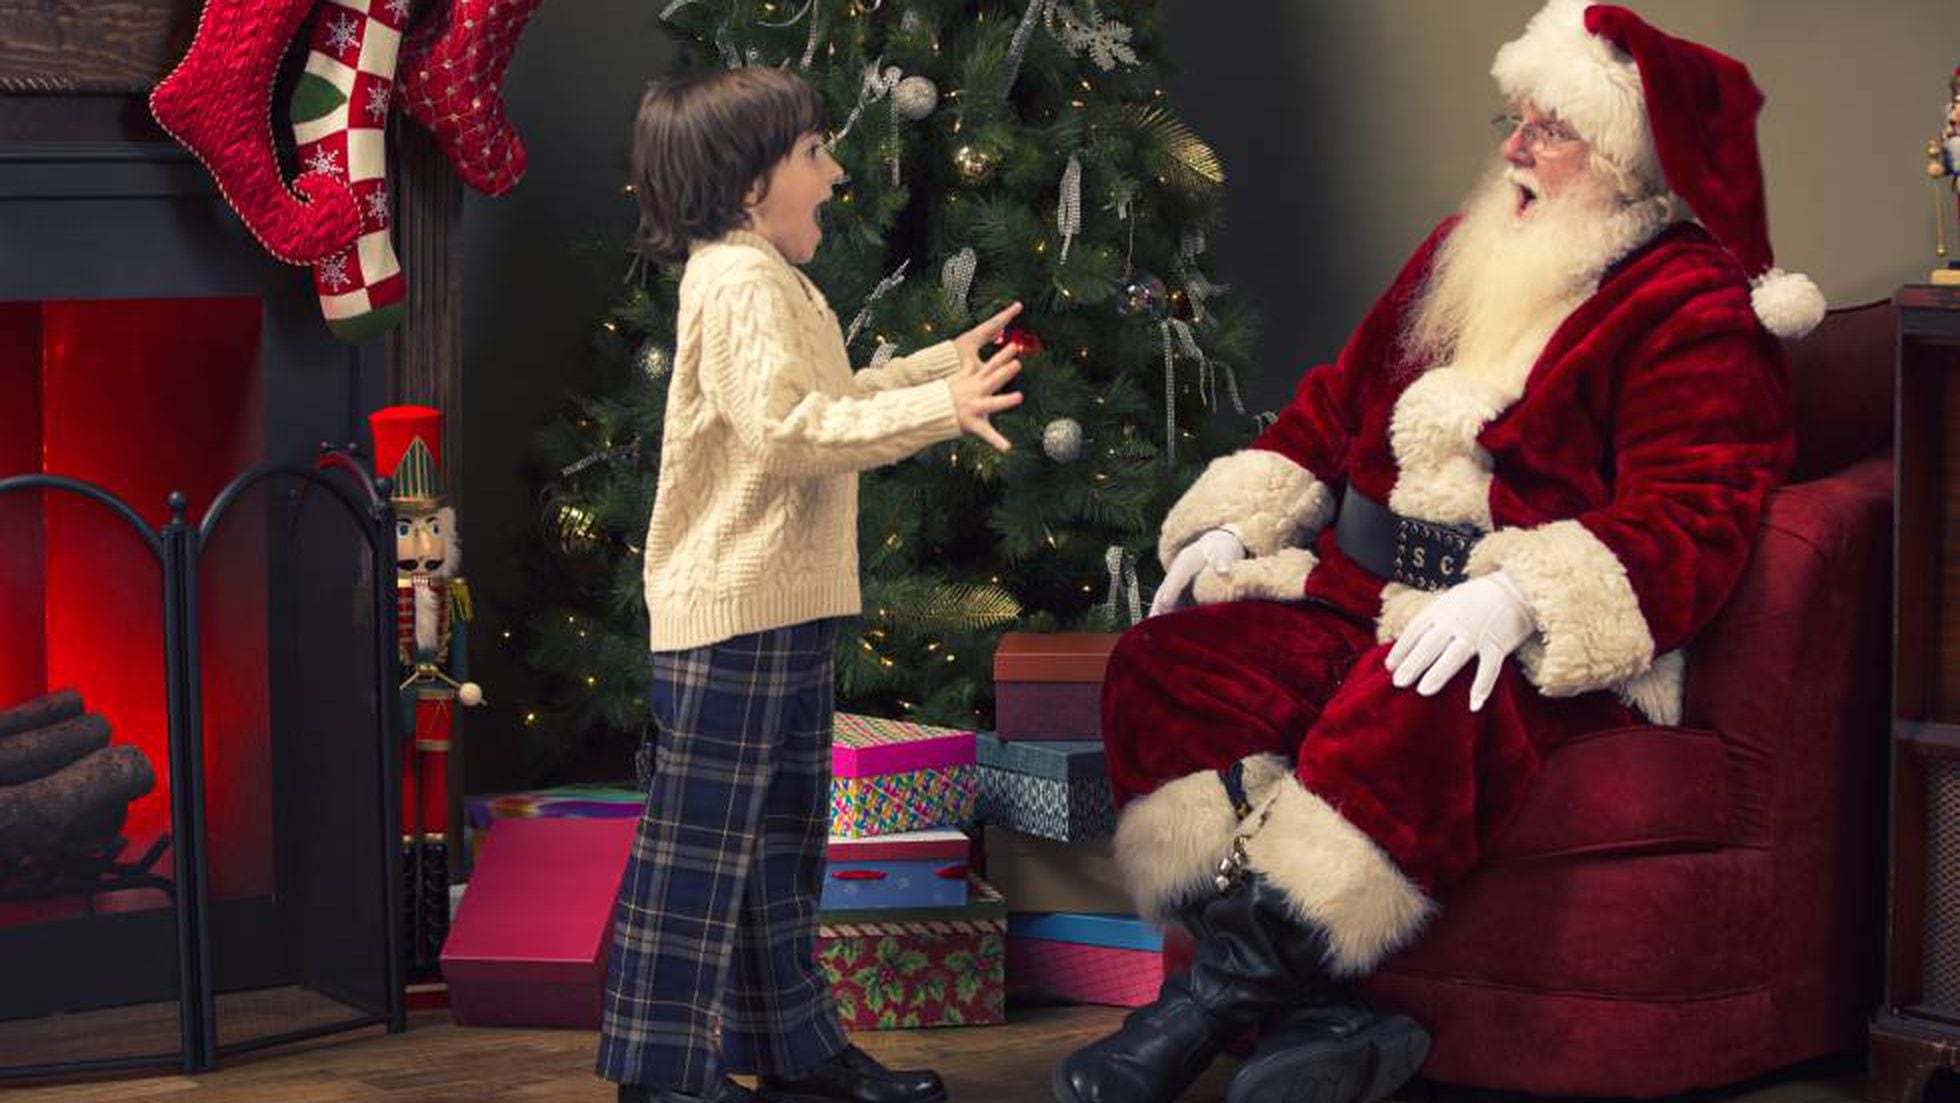 Suyo cortesía arco Por qué los niños creen (o no) que Papá Noel existe? | Ciencia | EL PAÍS